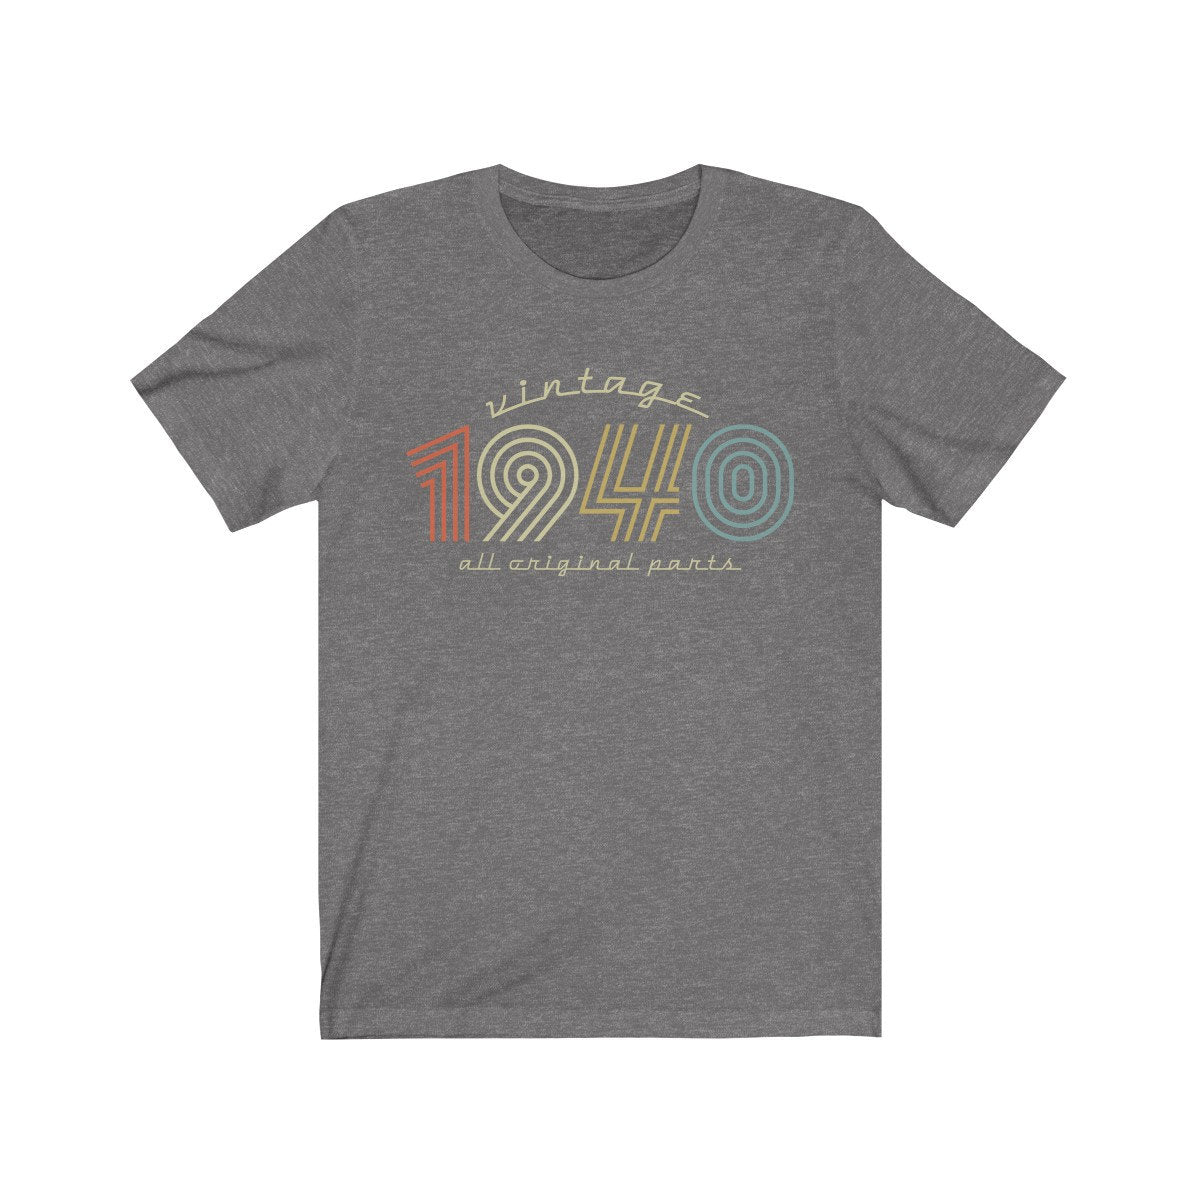 Vintage 1940 Birthday gift t-shirt for women or men